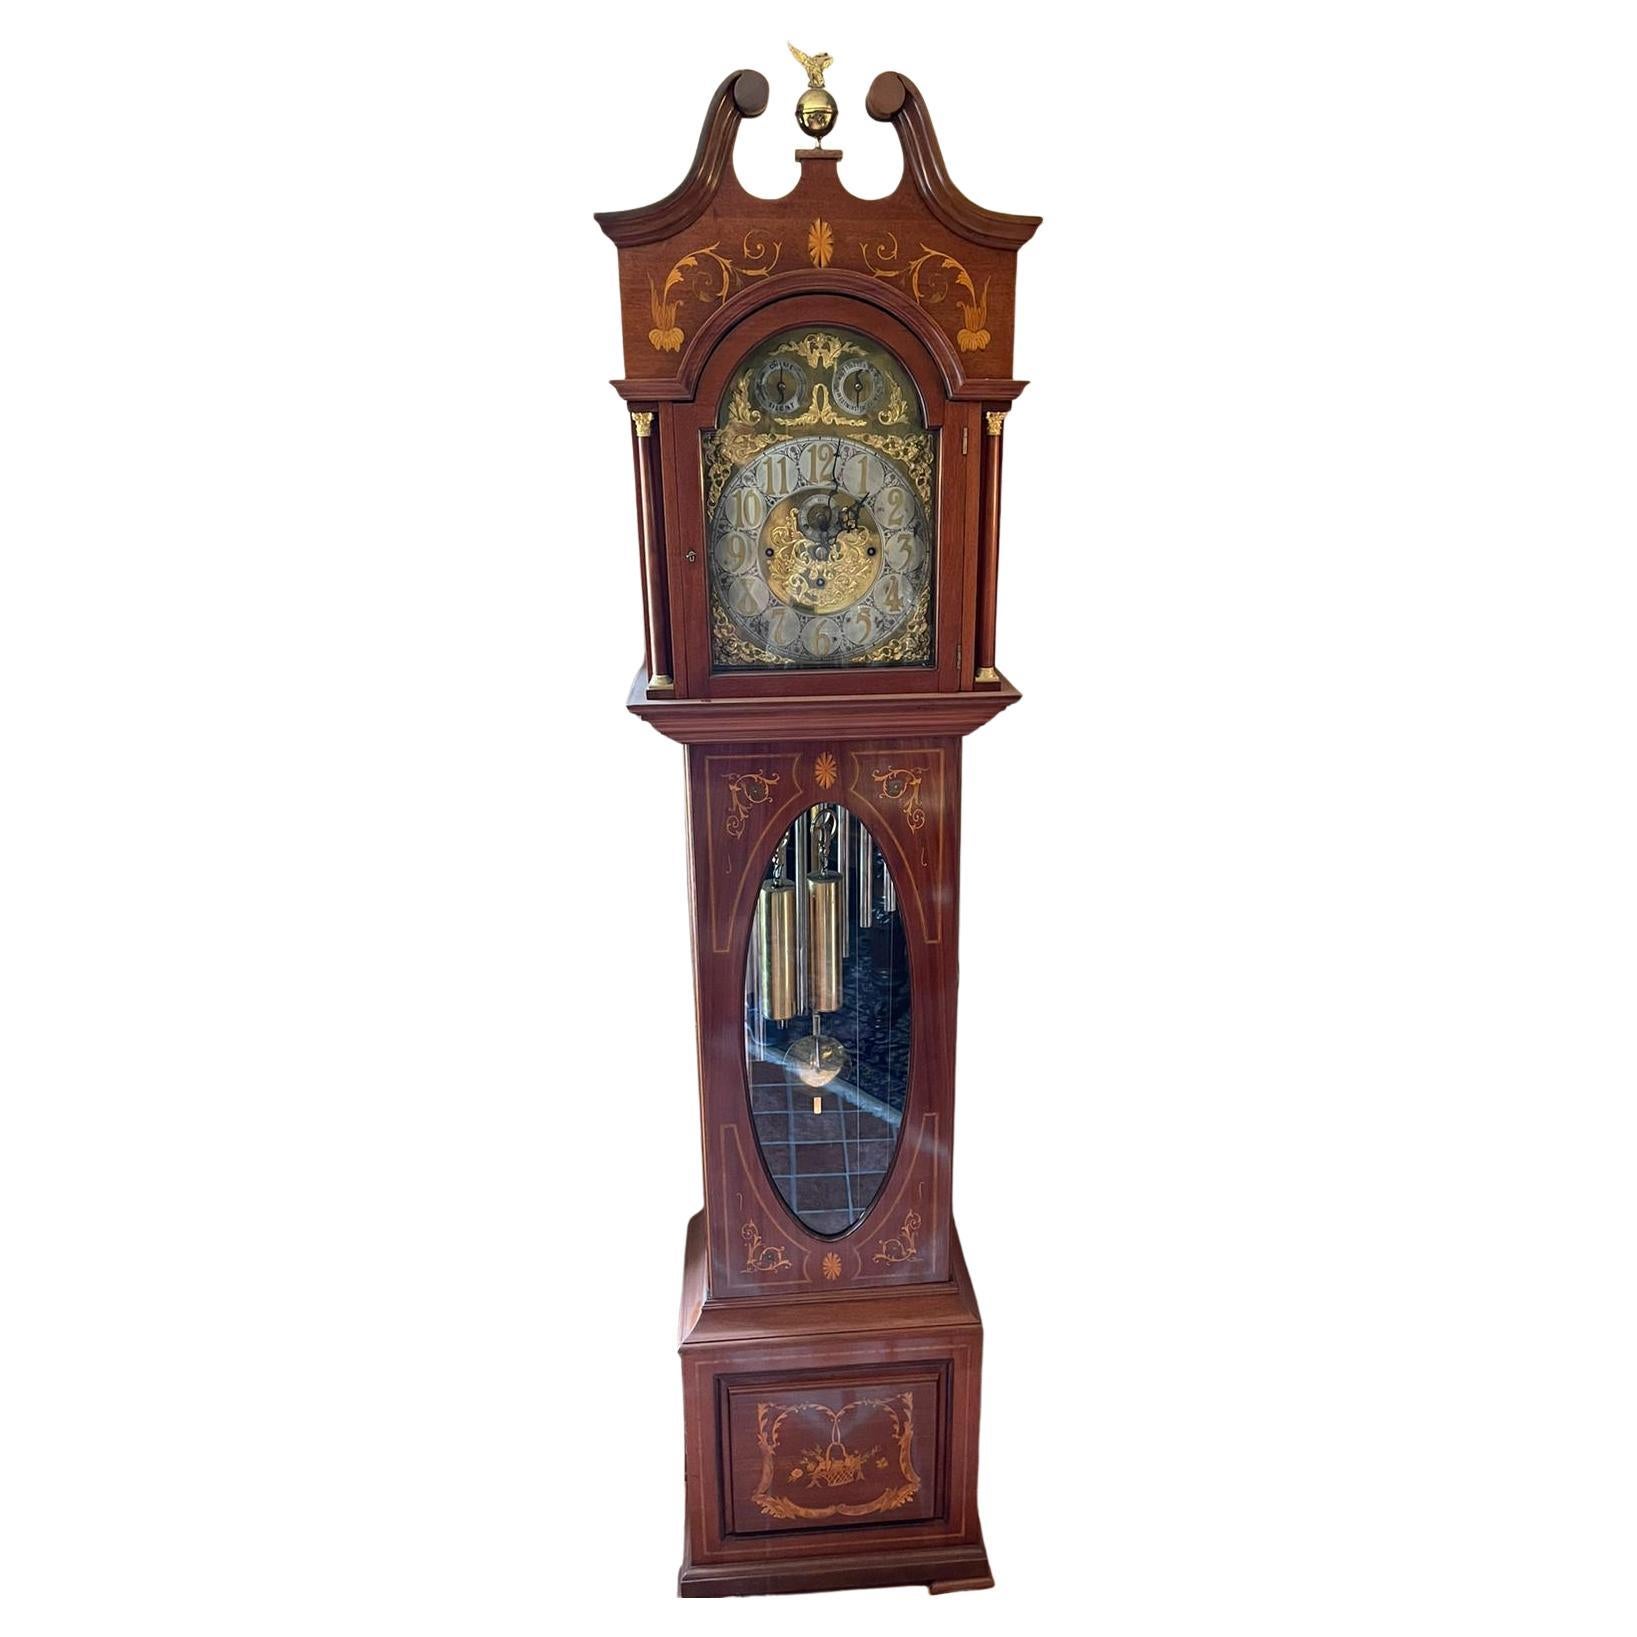 Horloge de grand-père anglaise du 19ème siècle en acajou incrusté de bois fruitier de la fin de l'époque victorienne